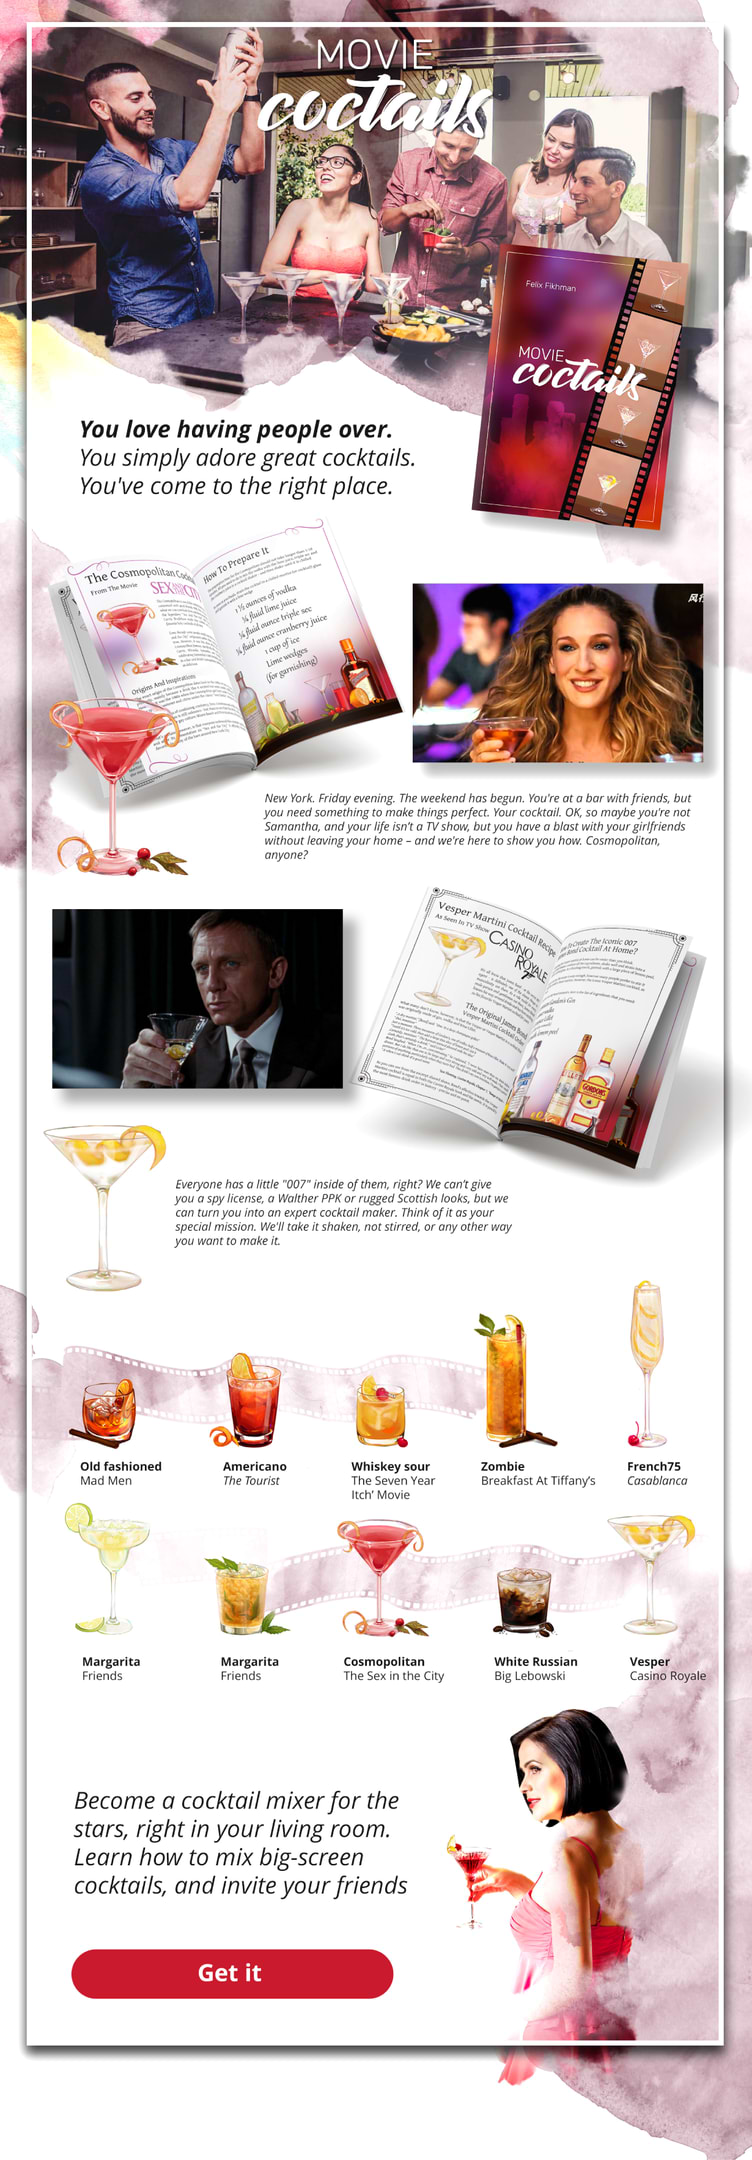 MOVIE cocktails תמונה אתר מלא